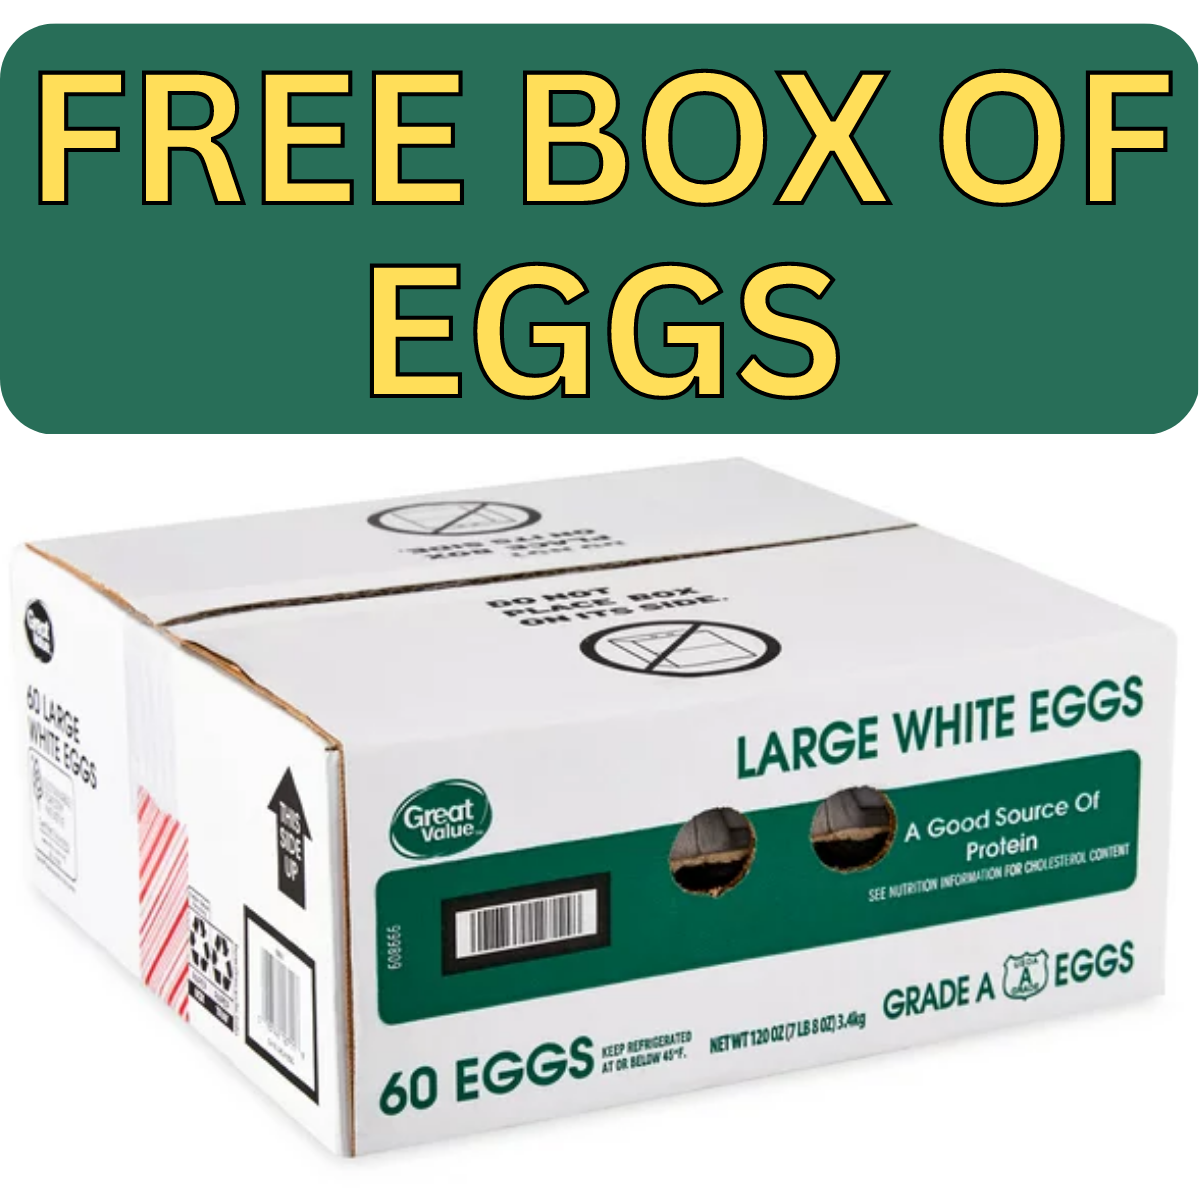 FREE BOX OF EGGS